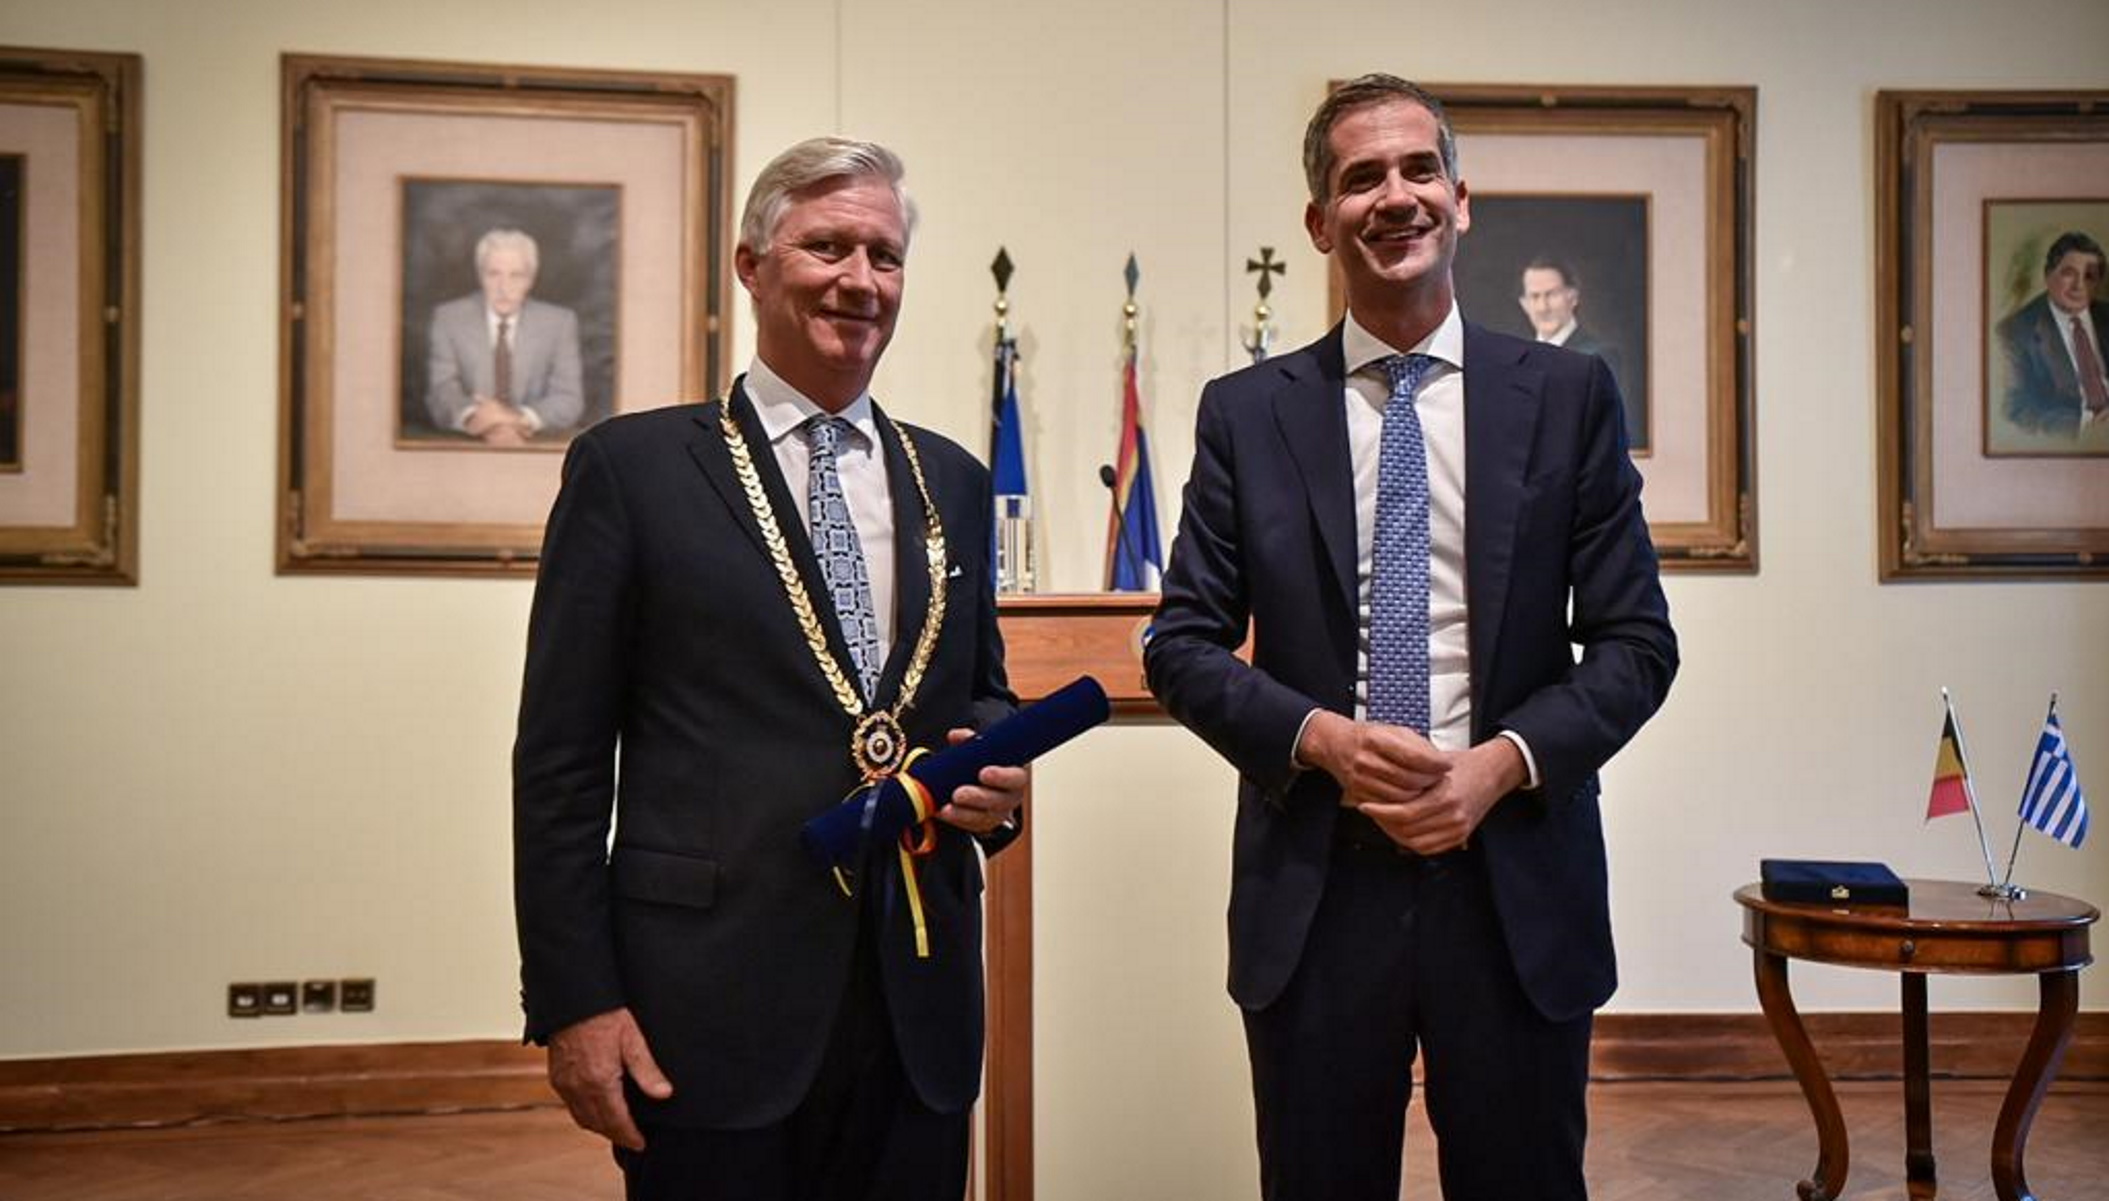 Ο Κώστας Μπακογιάννης απένειμε στον Βασιλιά του Βελγίου το Χρυσό Μετάλλιο της Πόλεως των Αθηνών